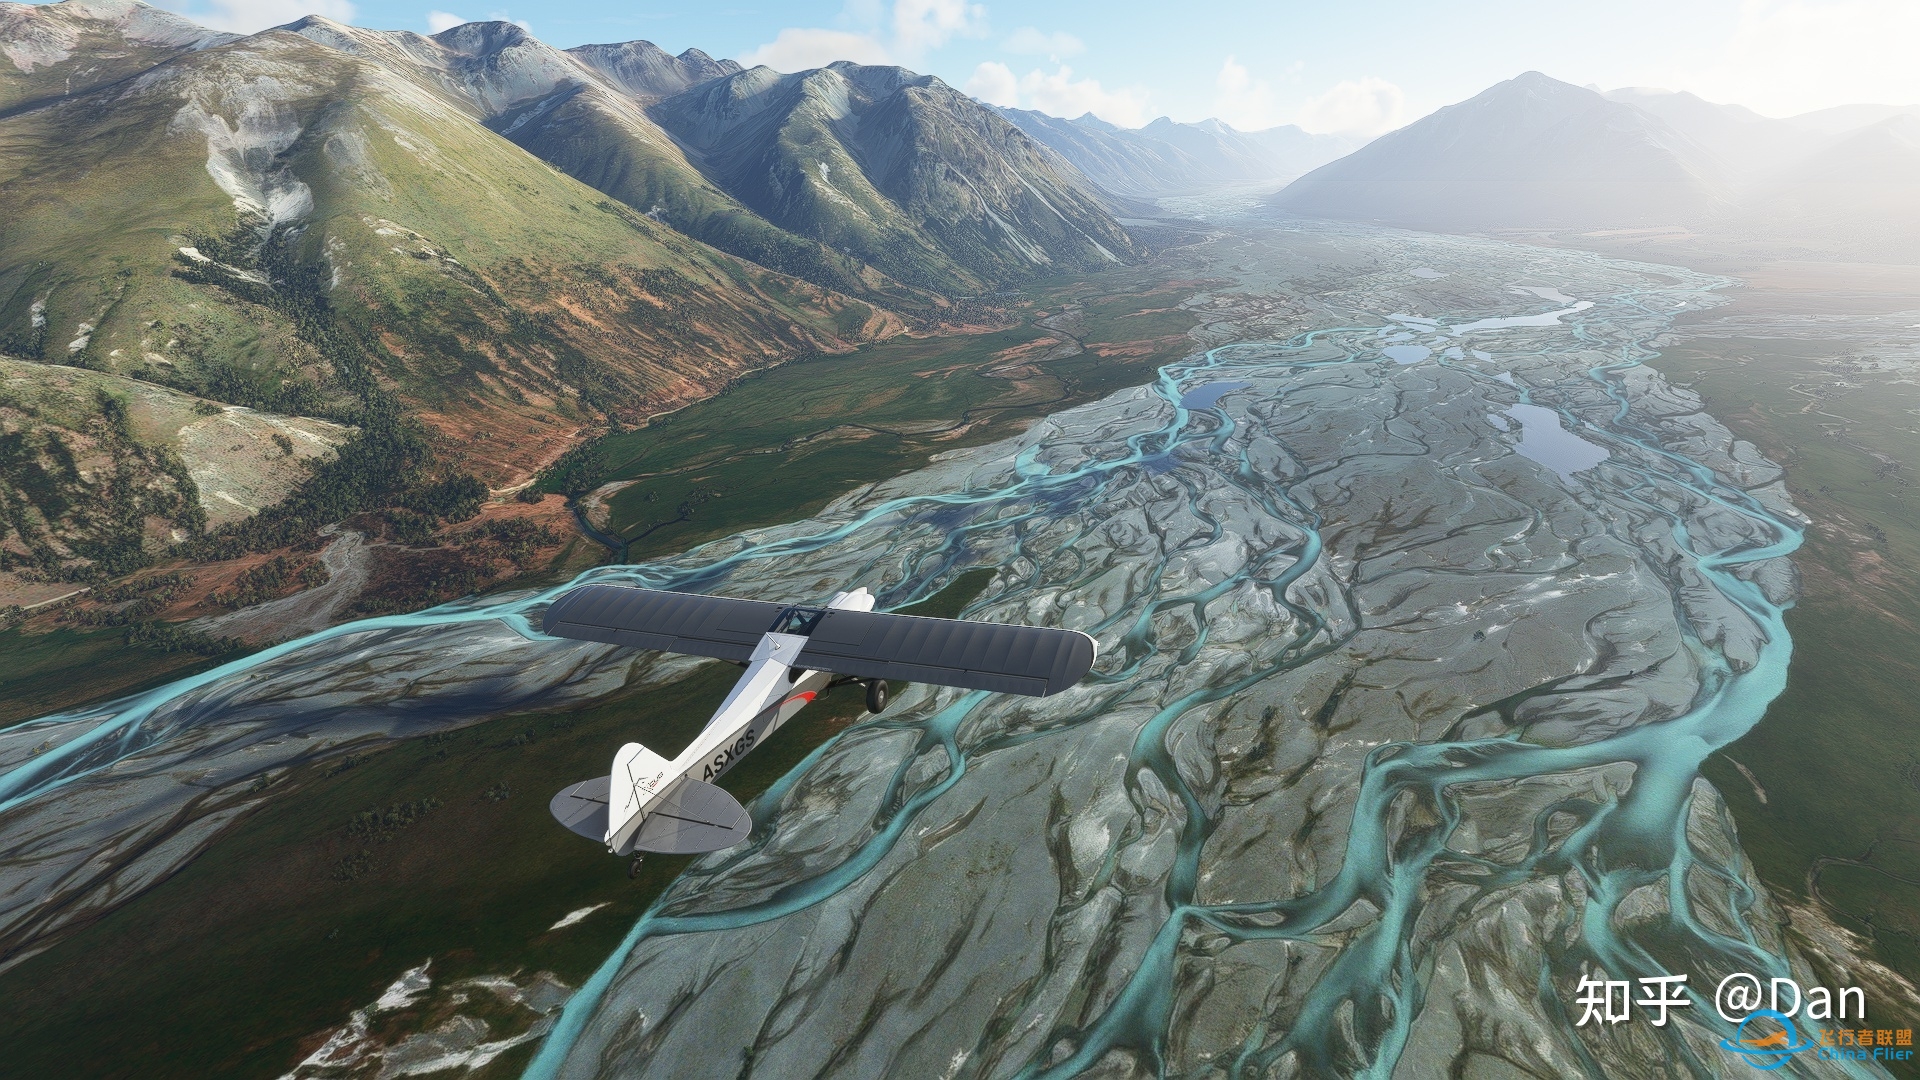 飞行模拟游戏《微软飞行模拟2020》实际体验如何？-5833 